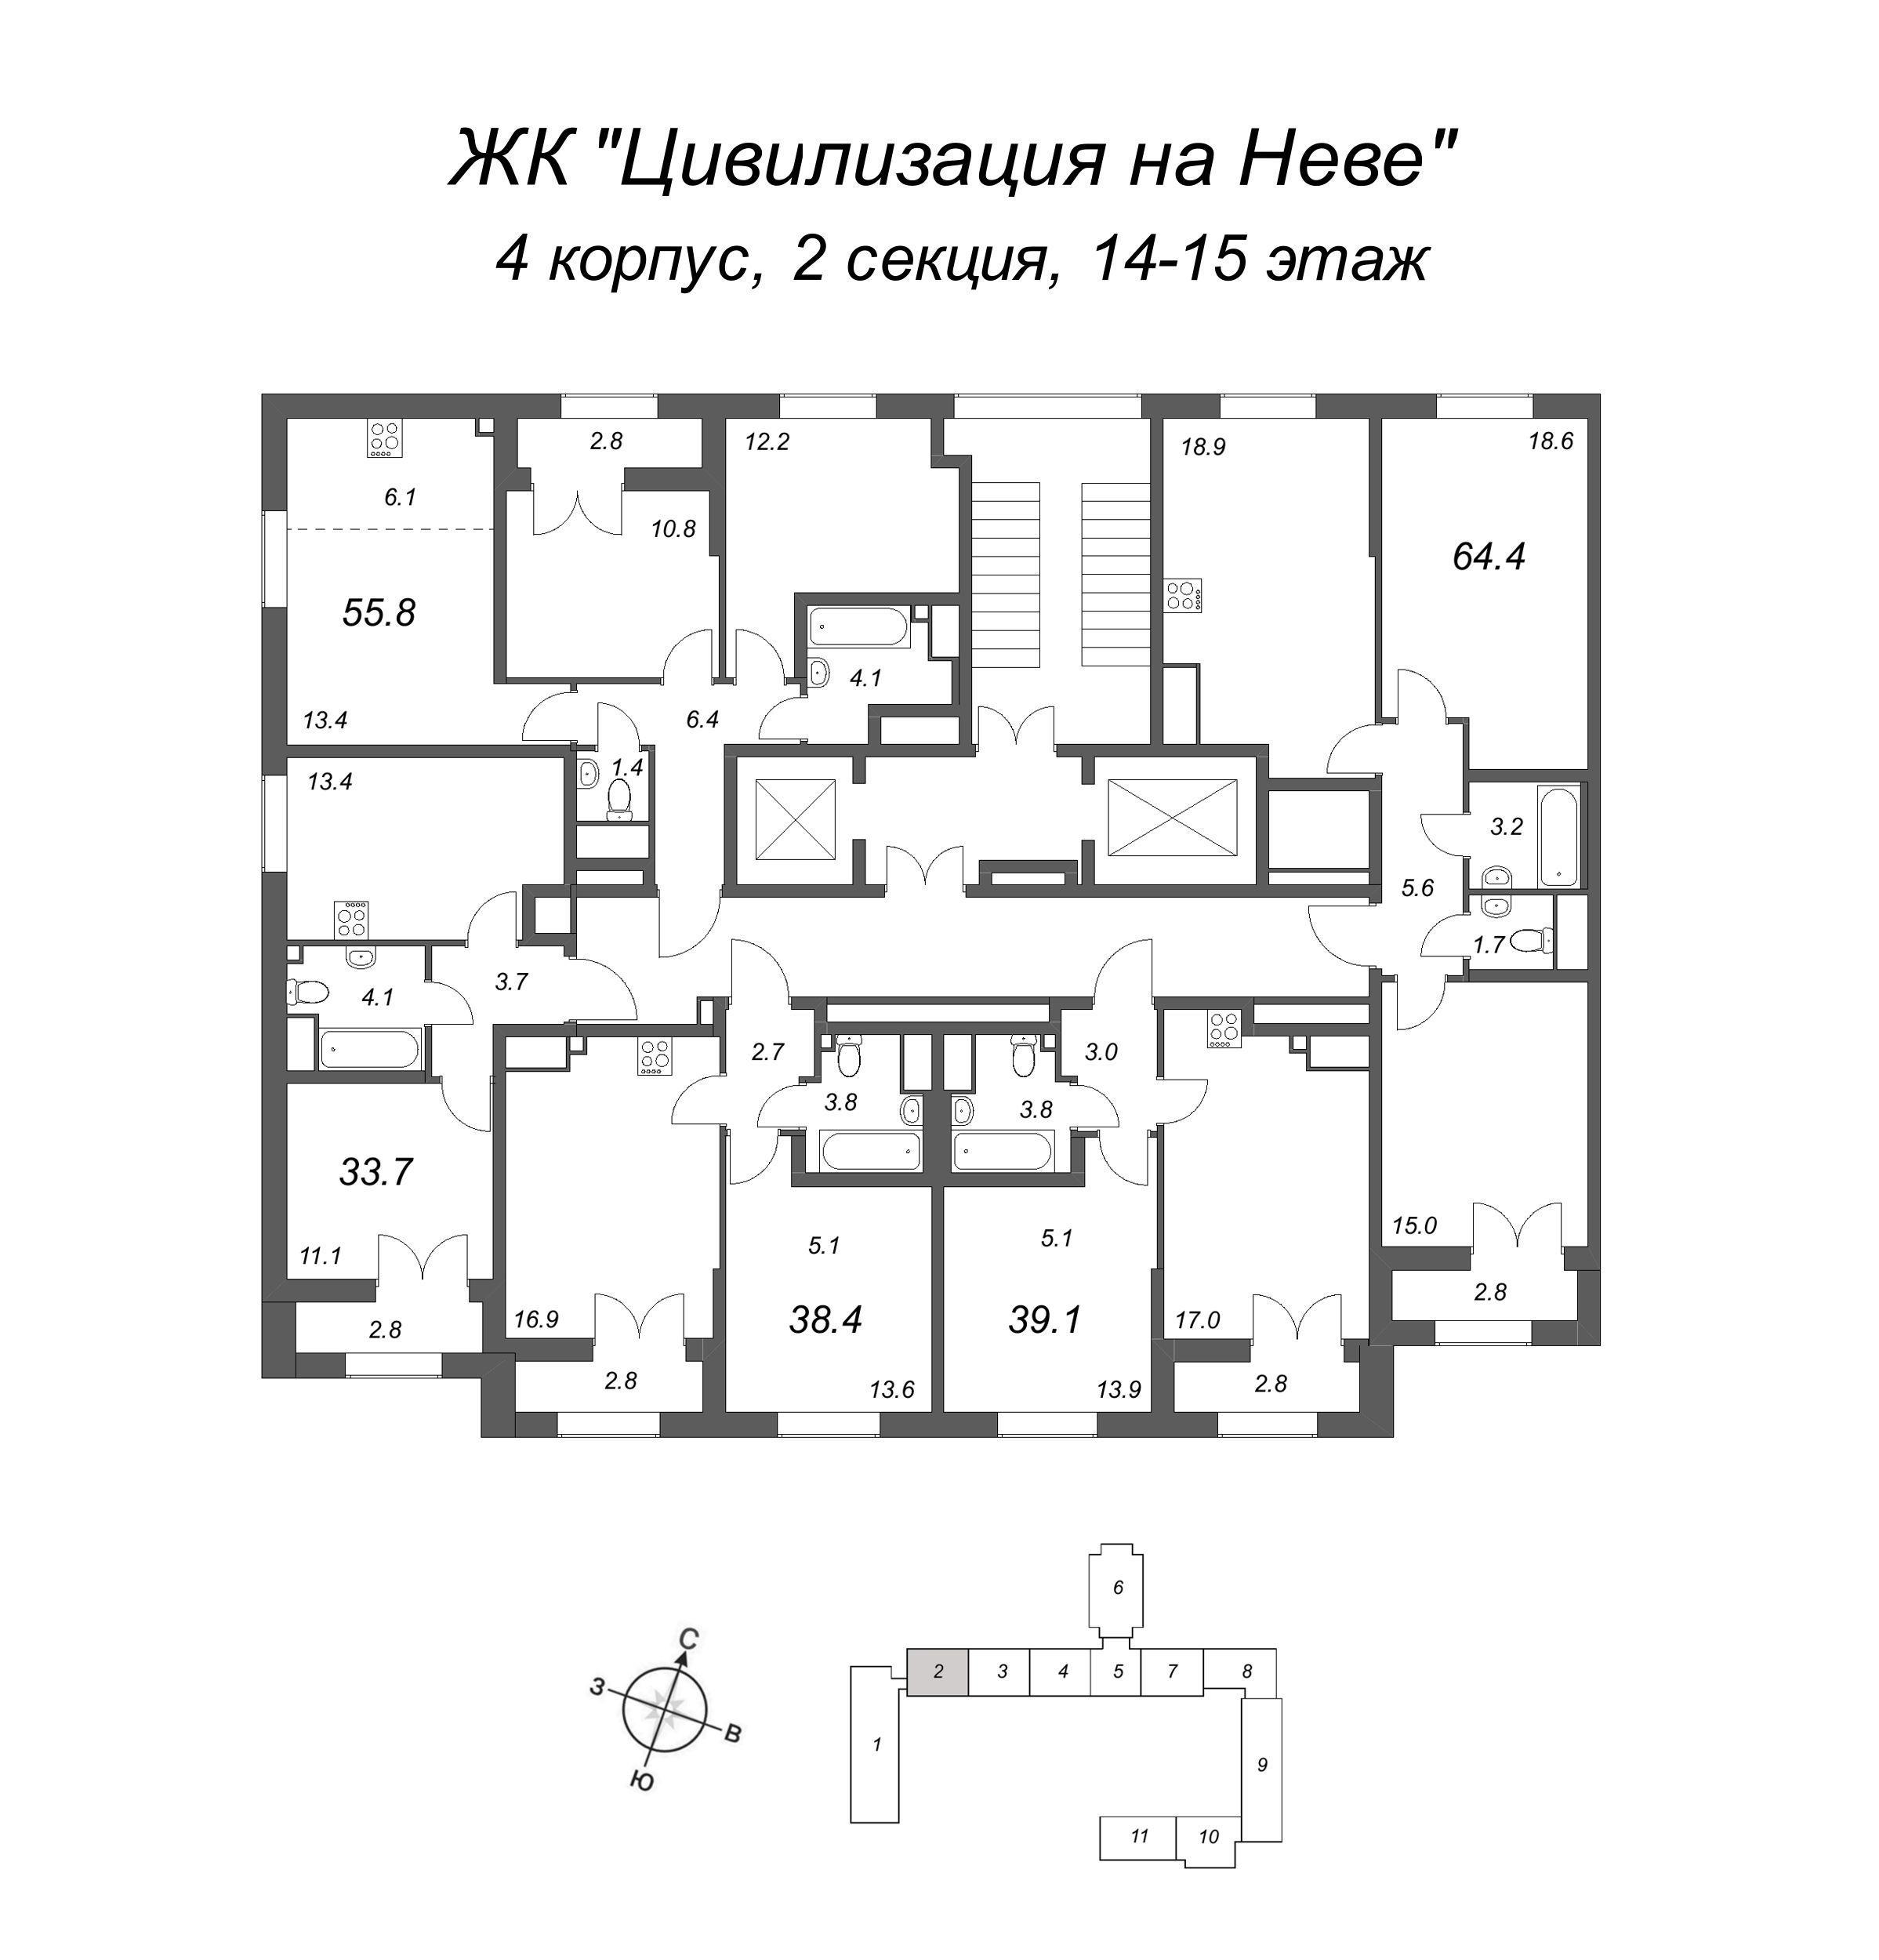 3-комнатная (Евро) квартира, 64.4 м² в ЖК "Цивилизация на Неве" - планировка этажа